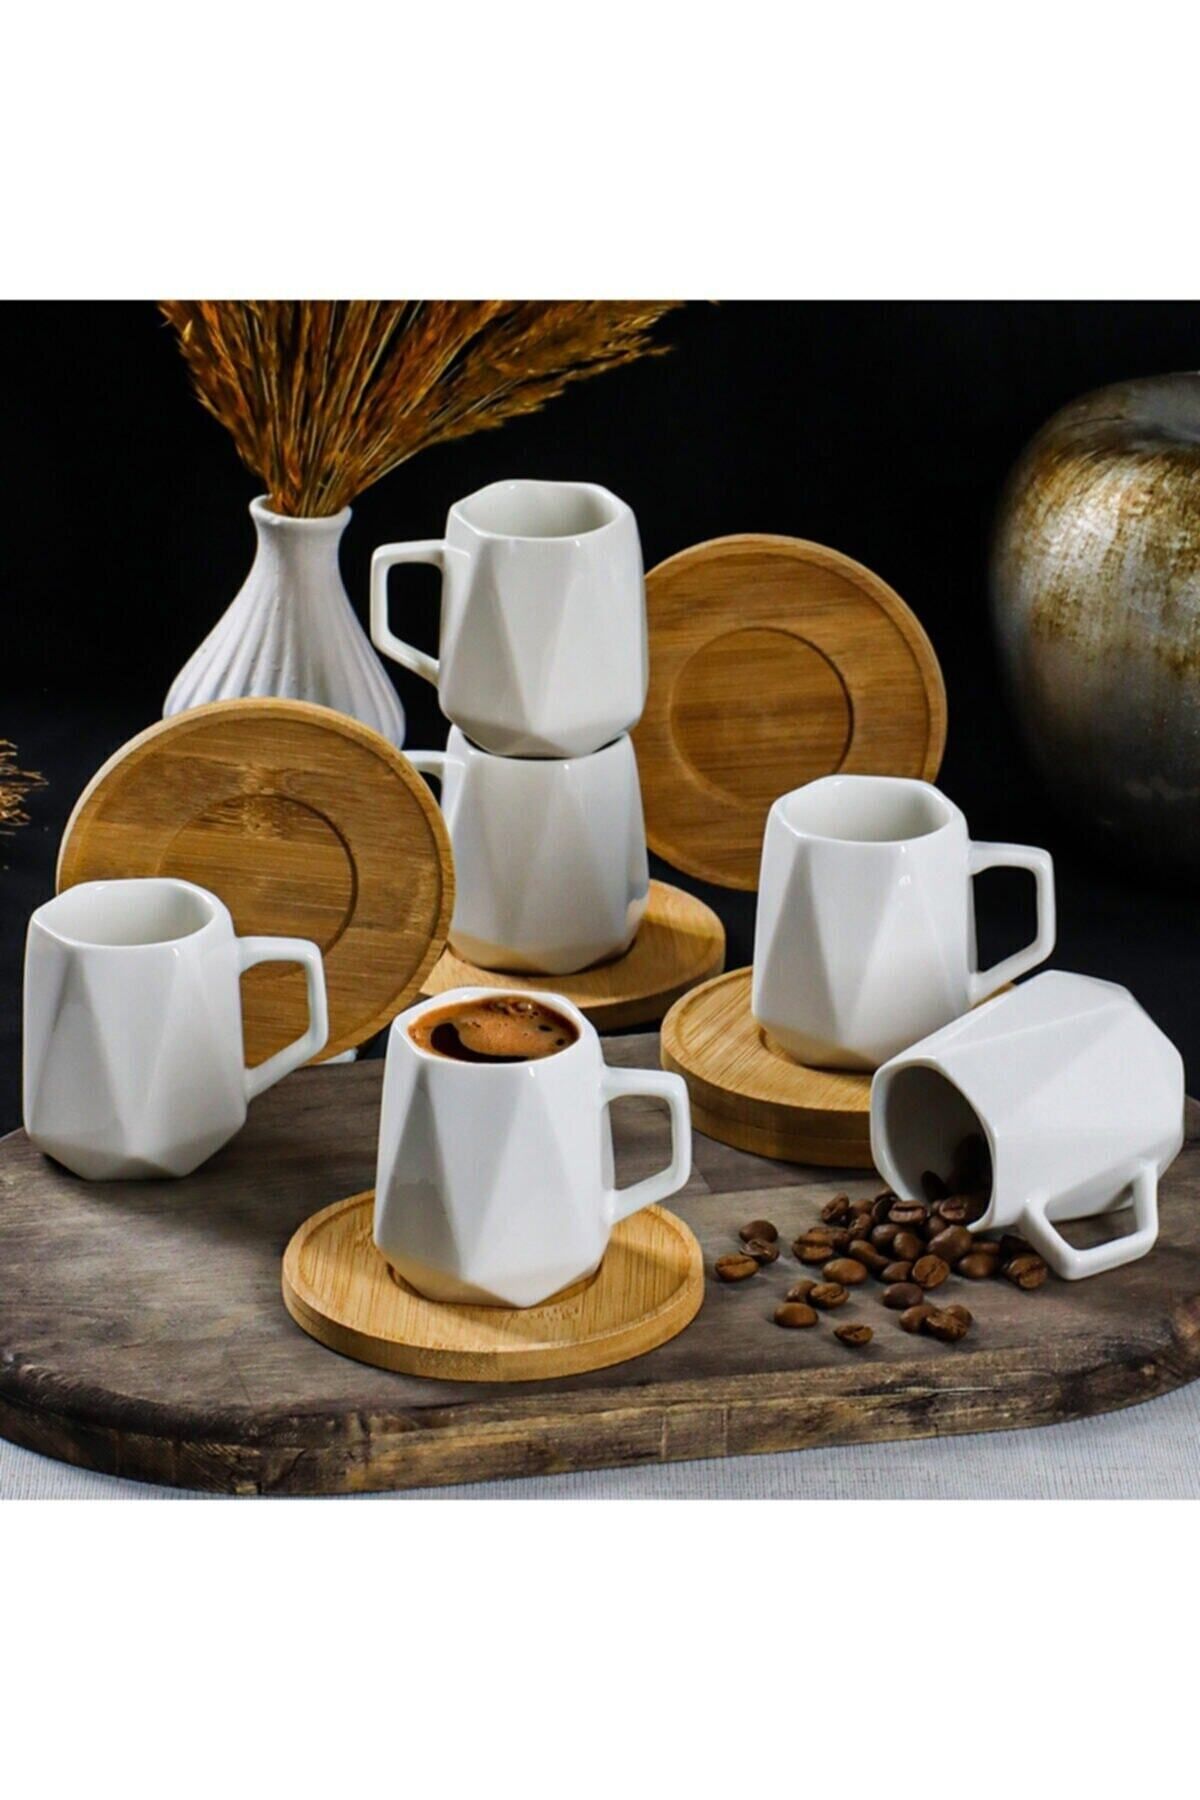 YzHome Beyaz Porselen Prizma 6 Kişilik Bambu Tabak Kahve Fincan Seti